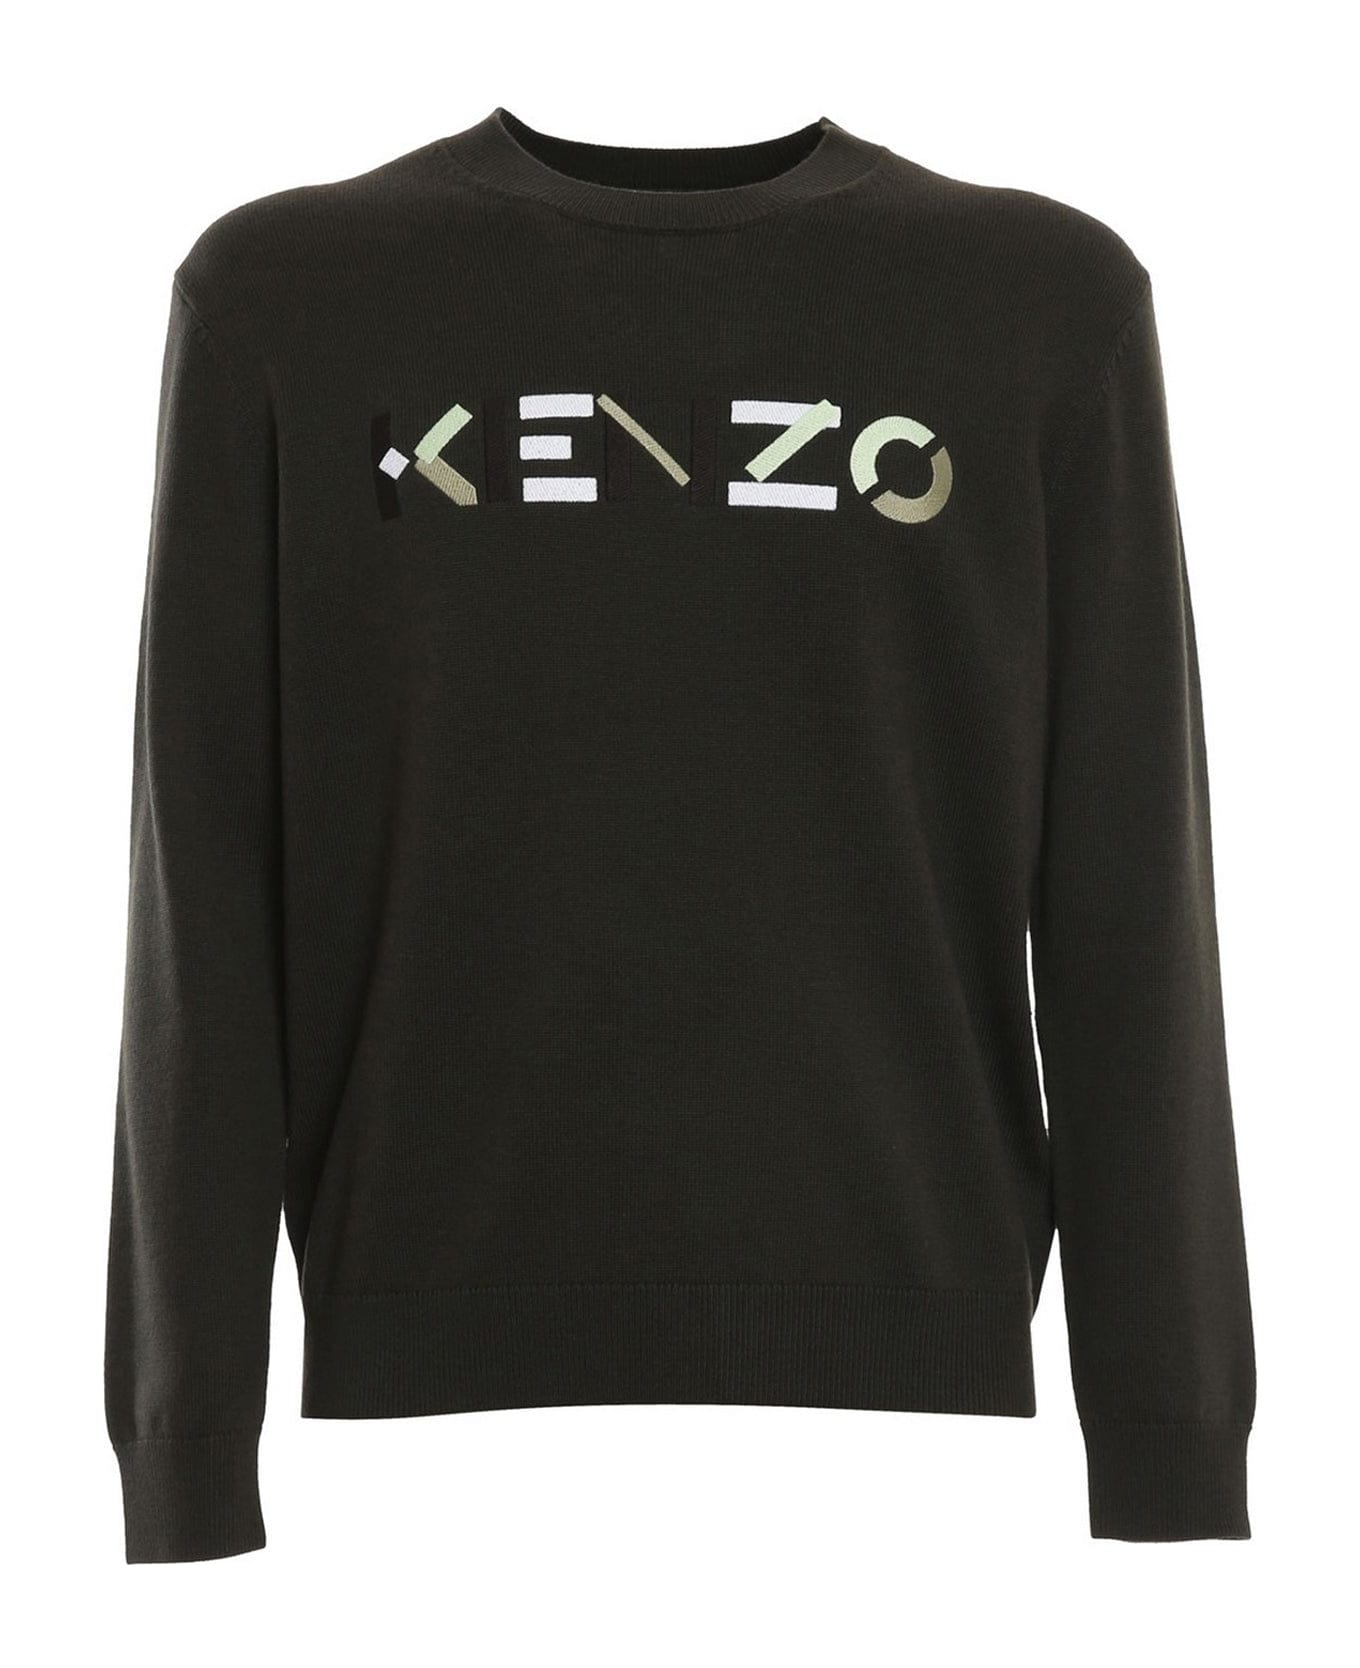 Kenzo Wool Sweater - Green